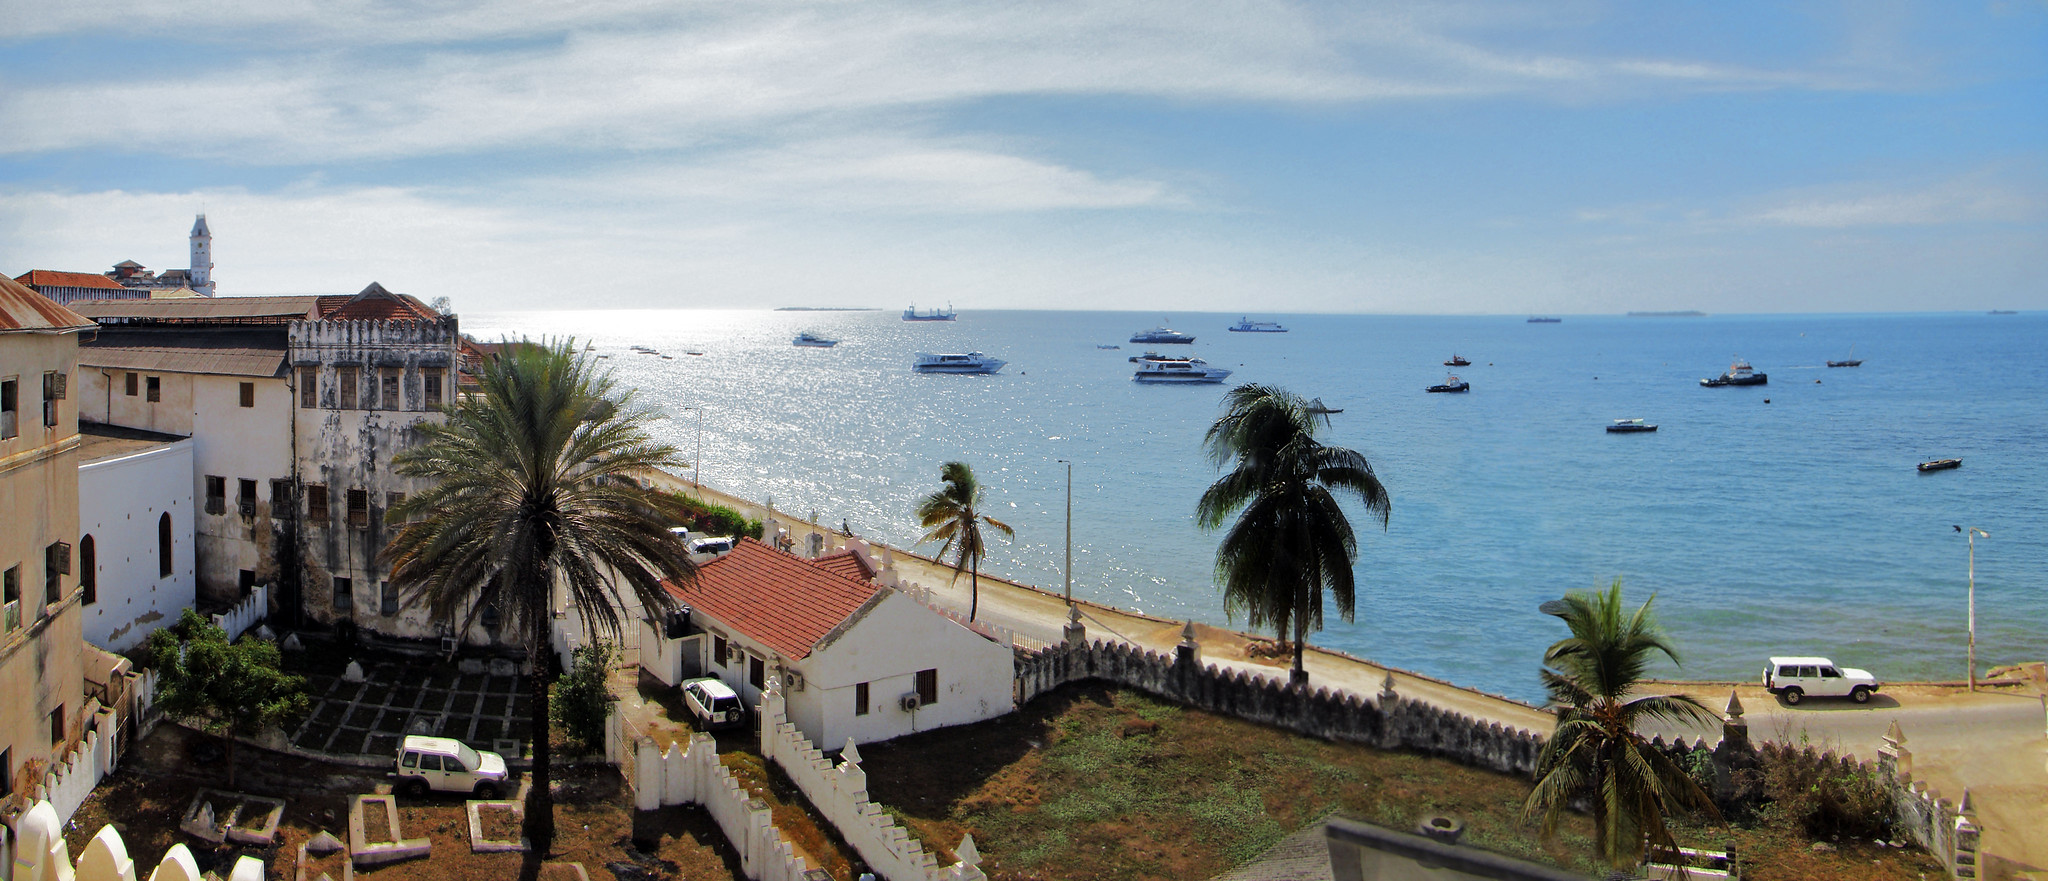 Vista de paseo maritimo desde el antiguo Fuerte de Omán Stone Town isla Zanzibar Tanzania 03